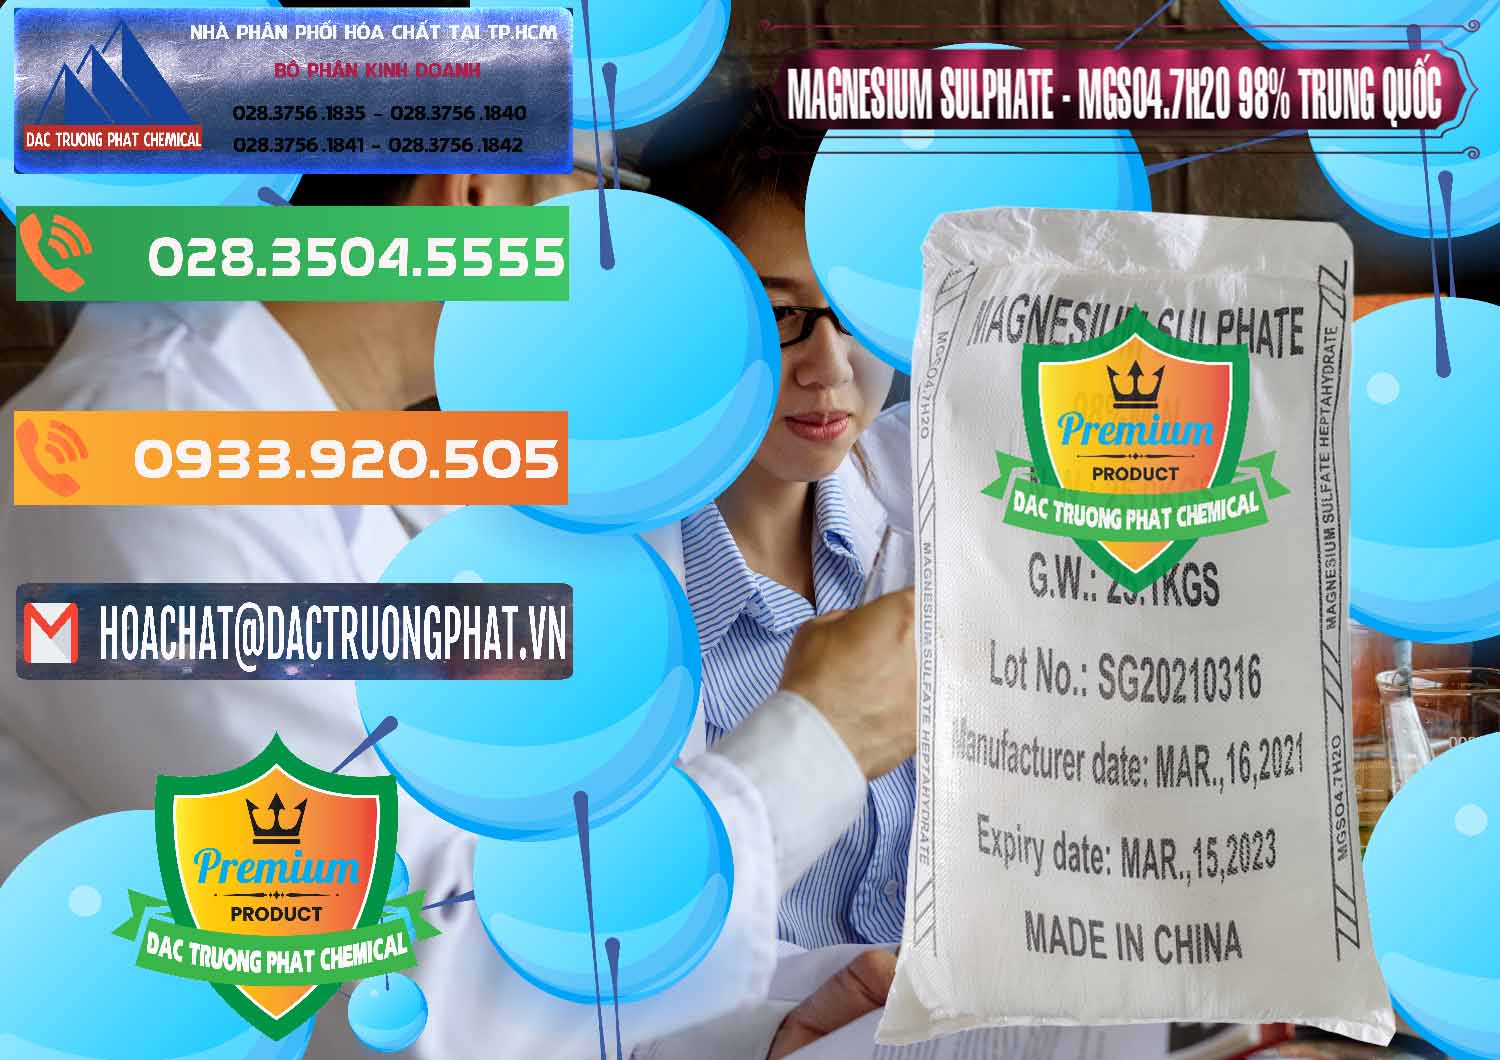 Cty chuyên phân phối _ bán MGSO4.7H2O – Magnesium Sulphate 98% Trung Quốc China - 0229 - Cty chuyên kinh doanh ( phân phối ) hóa chất tại TP.HCM - hoachatxulynuoc.com.vn